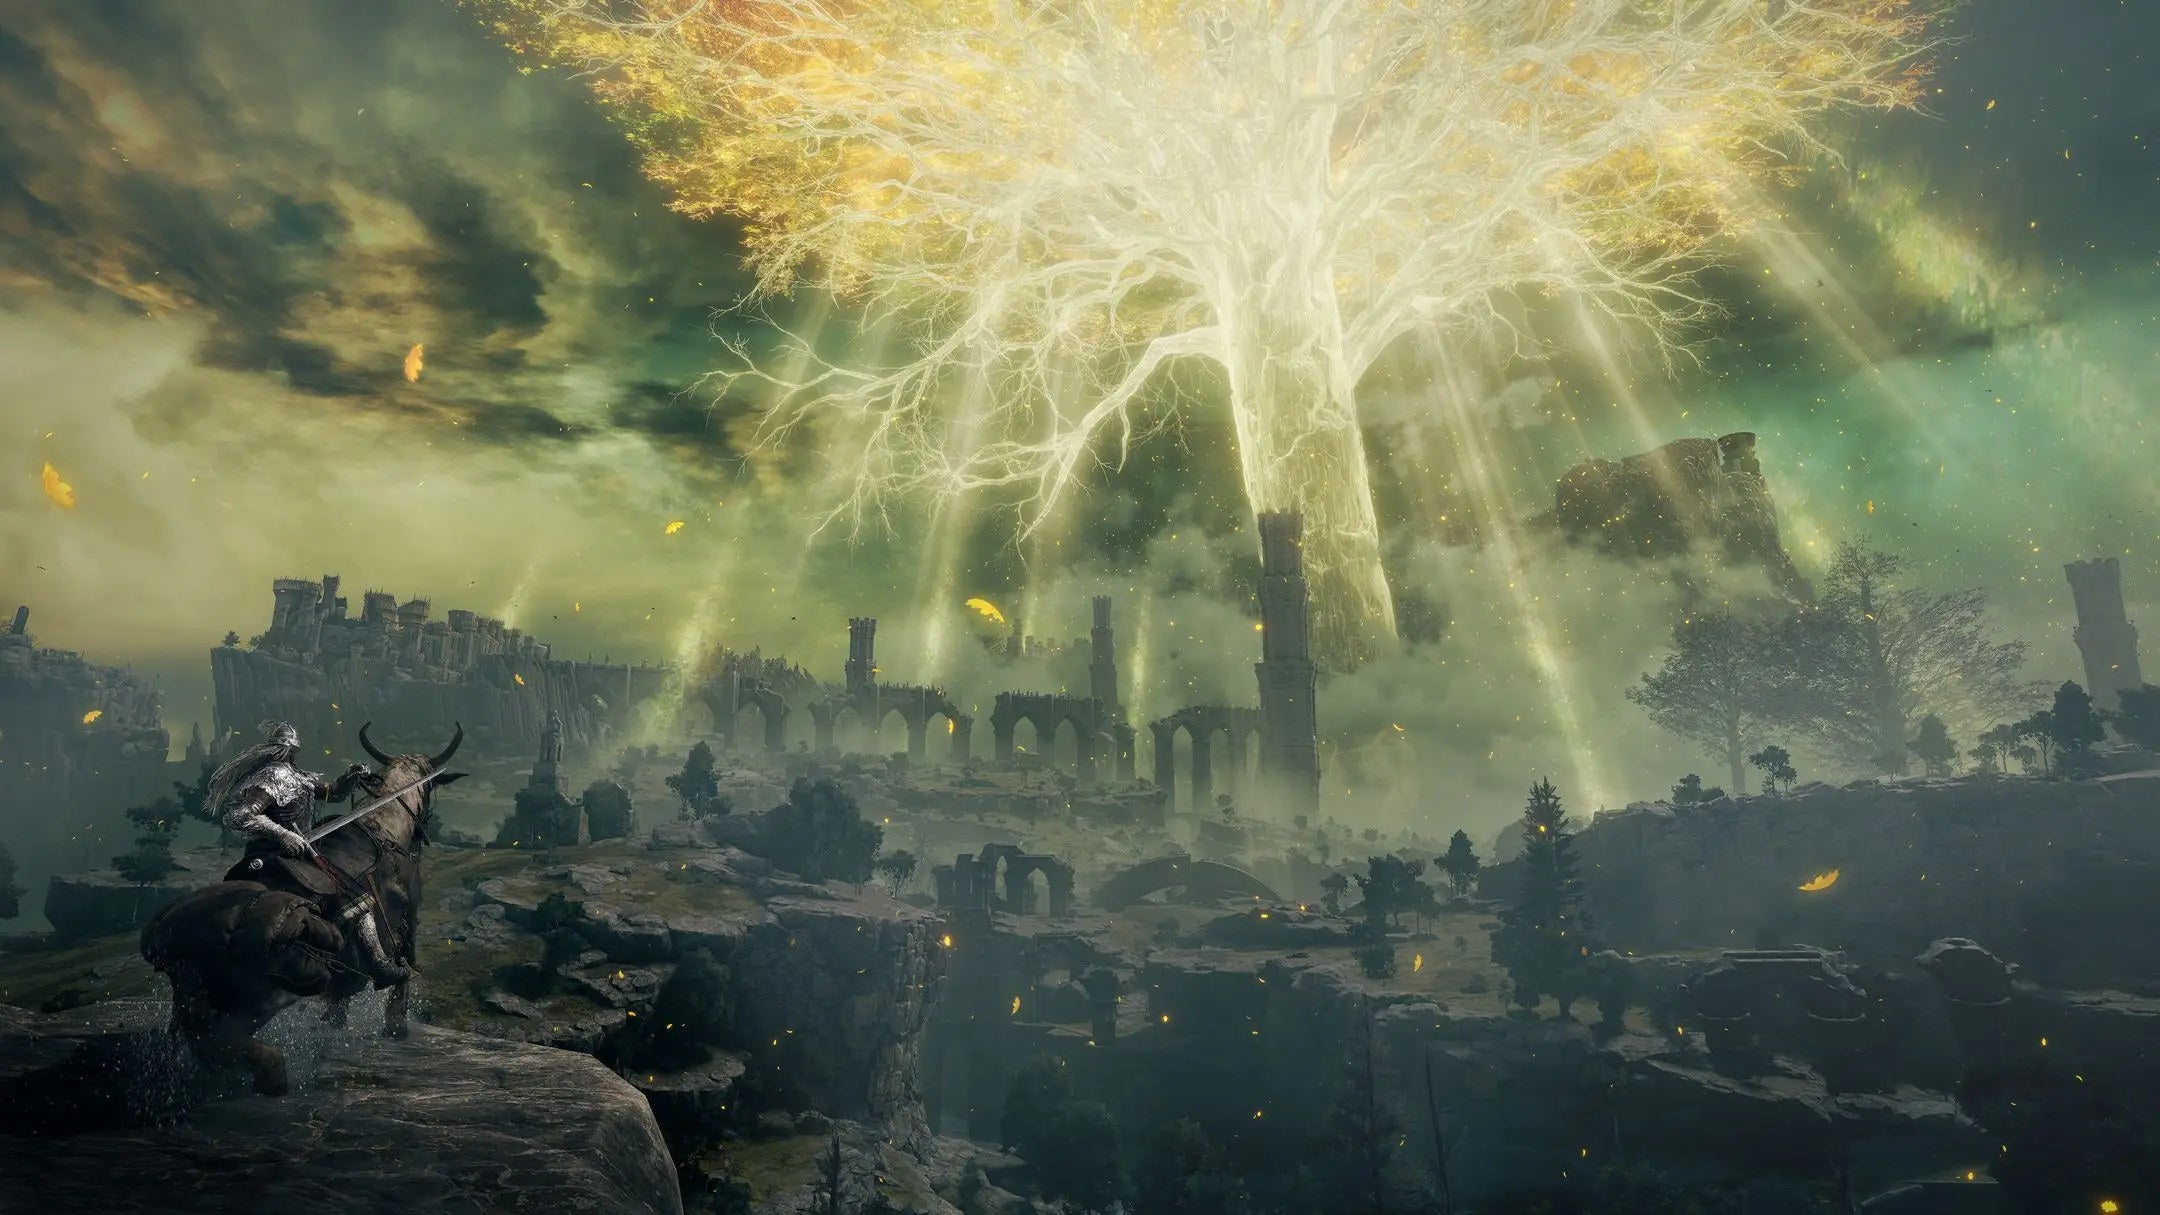 Uma gigantesca árvore brilhante no centro de uma paisagem em ruínas em uma captura de tela do Elden Ring.